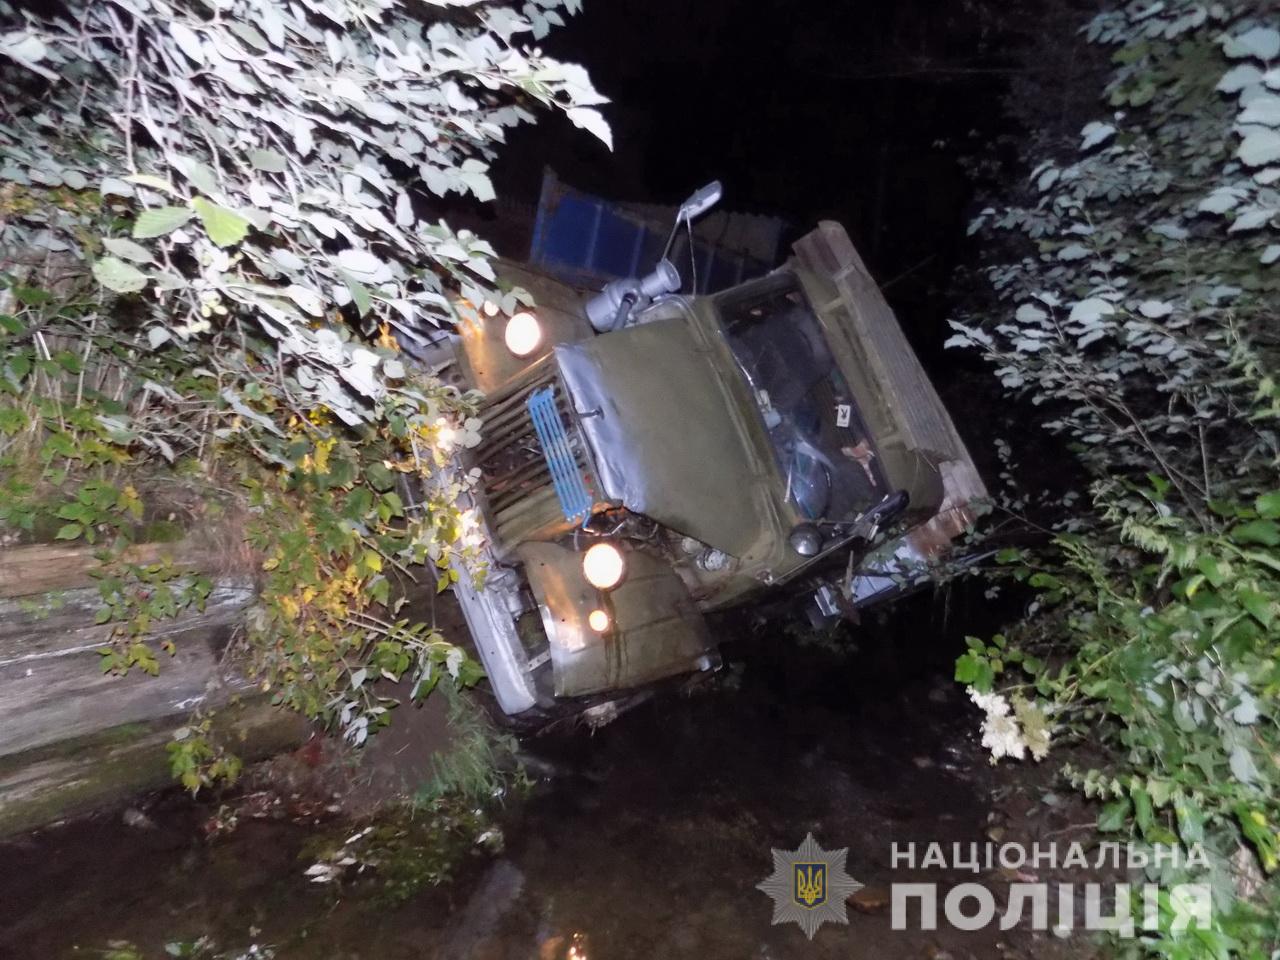 Сьогодні, 30 липня, о 01:08, в чергову частину Міжгірського відділення поліції надійшло повідомлення про те, що в річці знаходиться вантажний автомобіль.